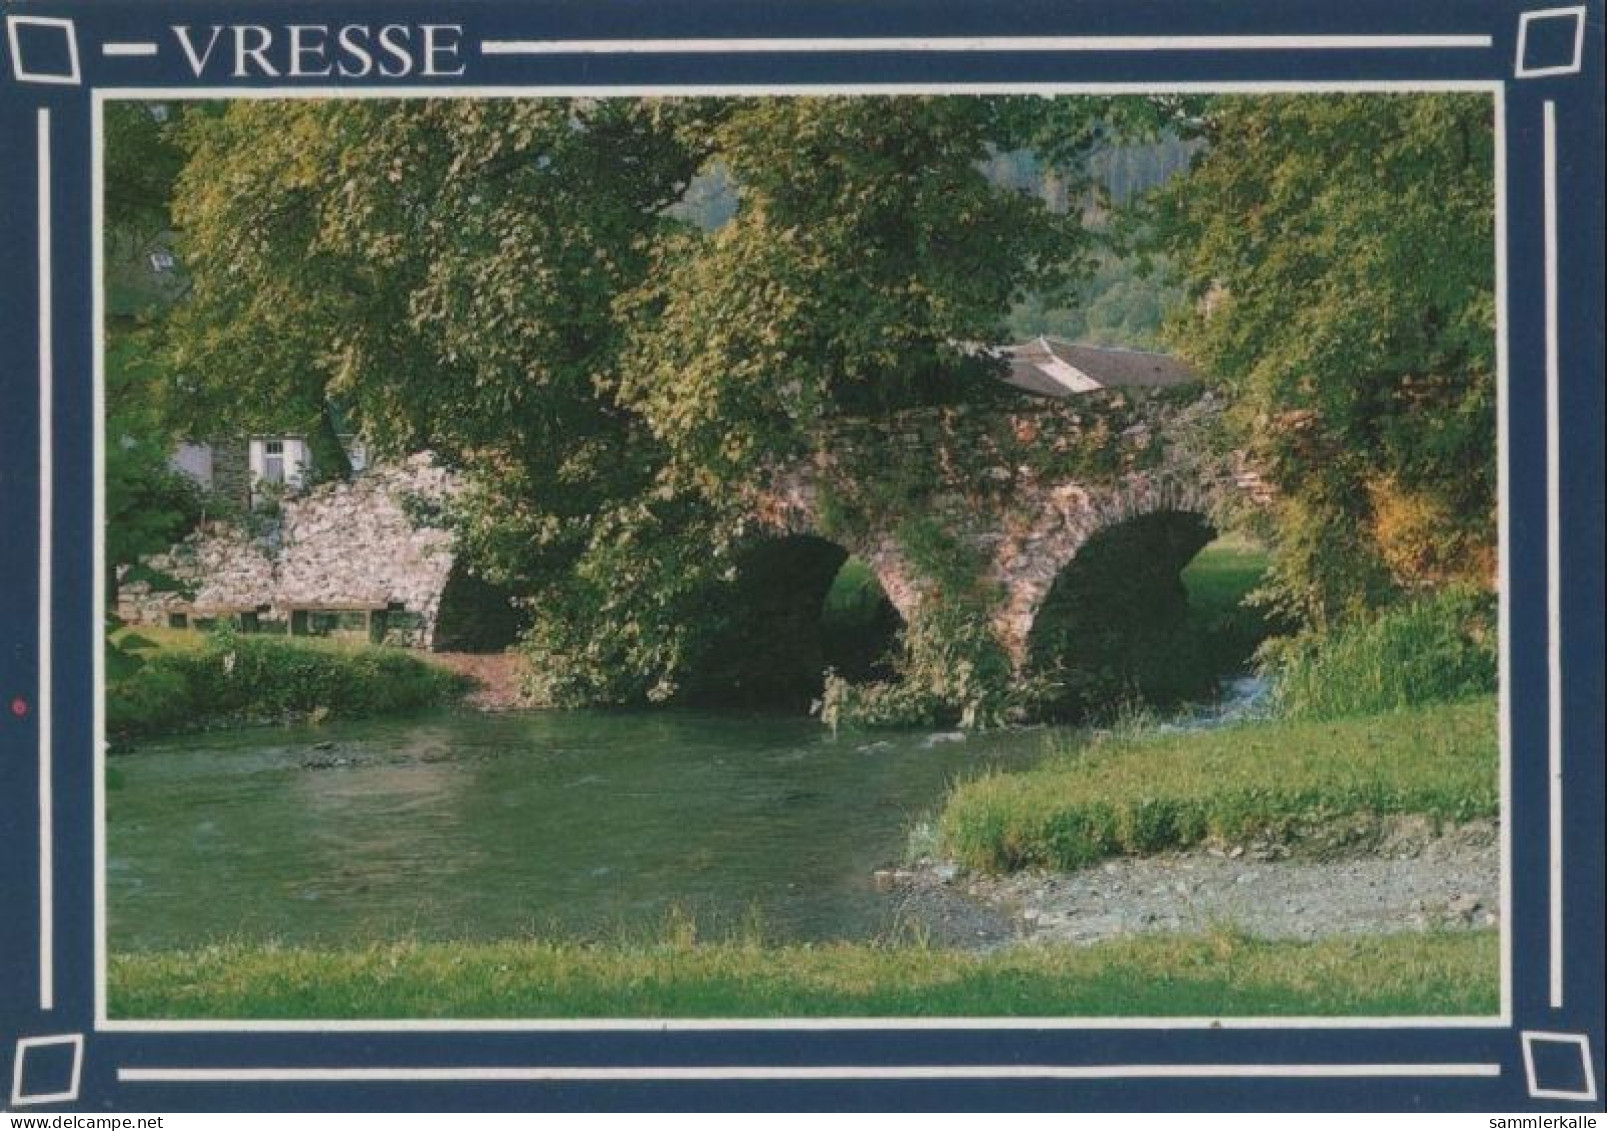 102104 - Frankreich - Vresse-sur-Semois - Le Pont St. Lambert - Ca. 1980 - Vresse-sur-Semois